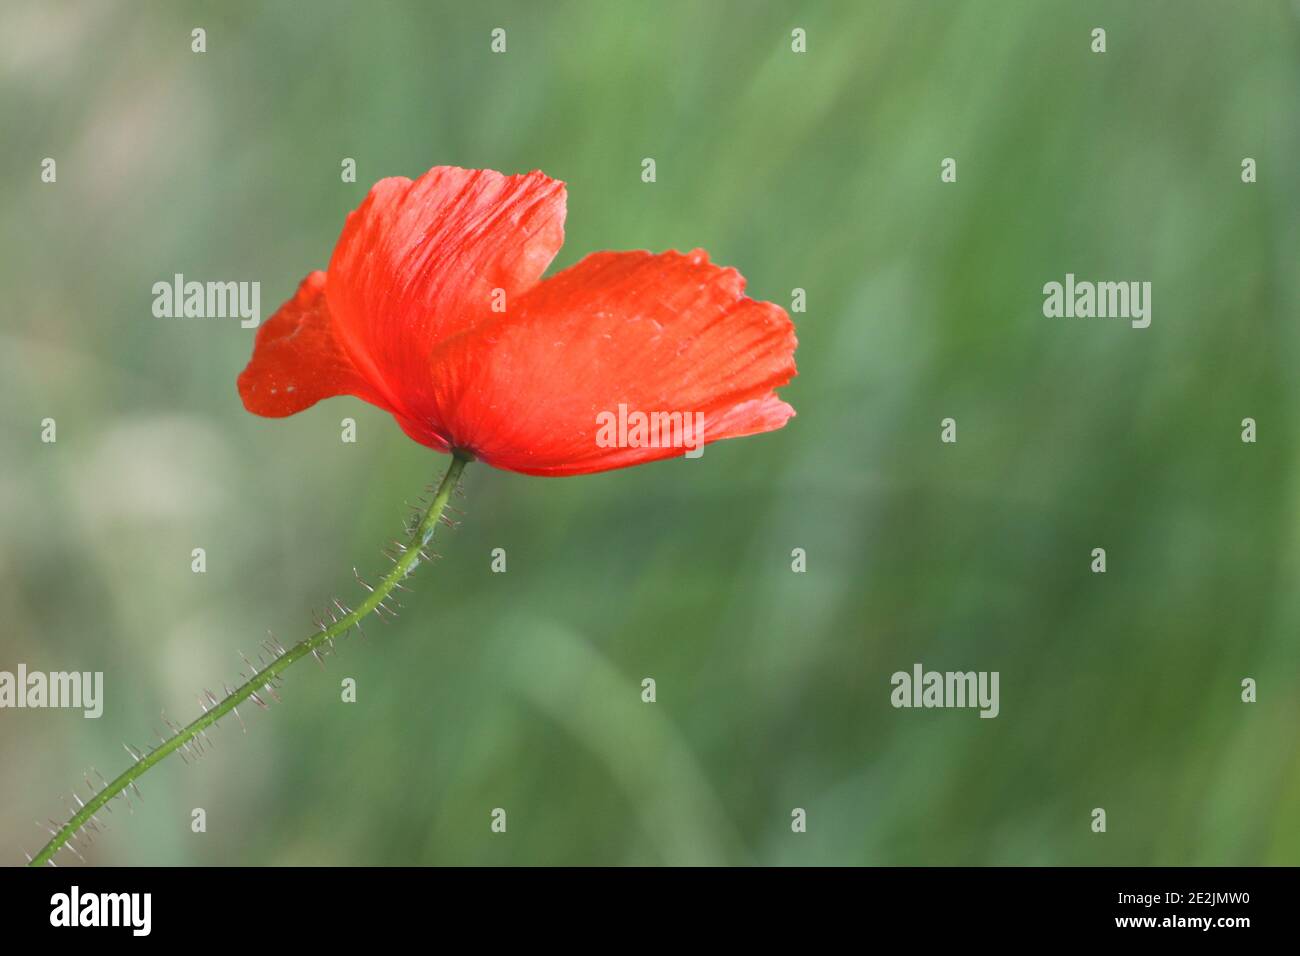 primer plano de una flor de amapola roja en flor Foto de stock